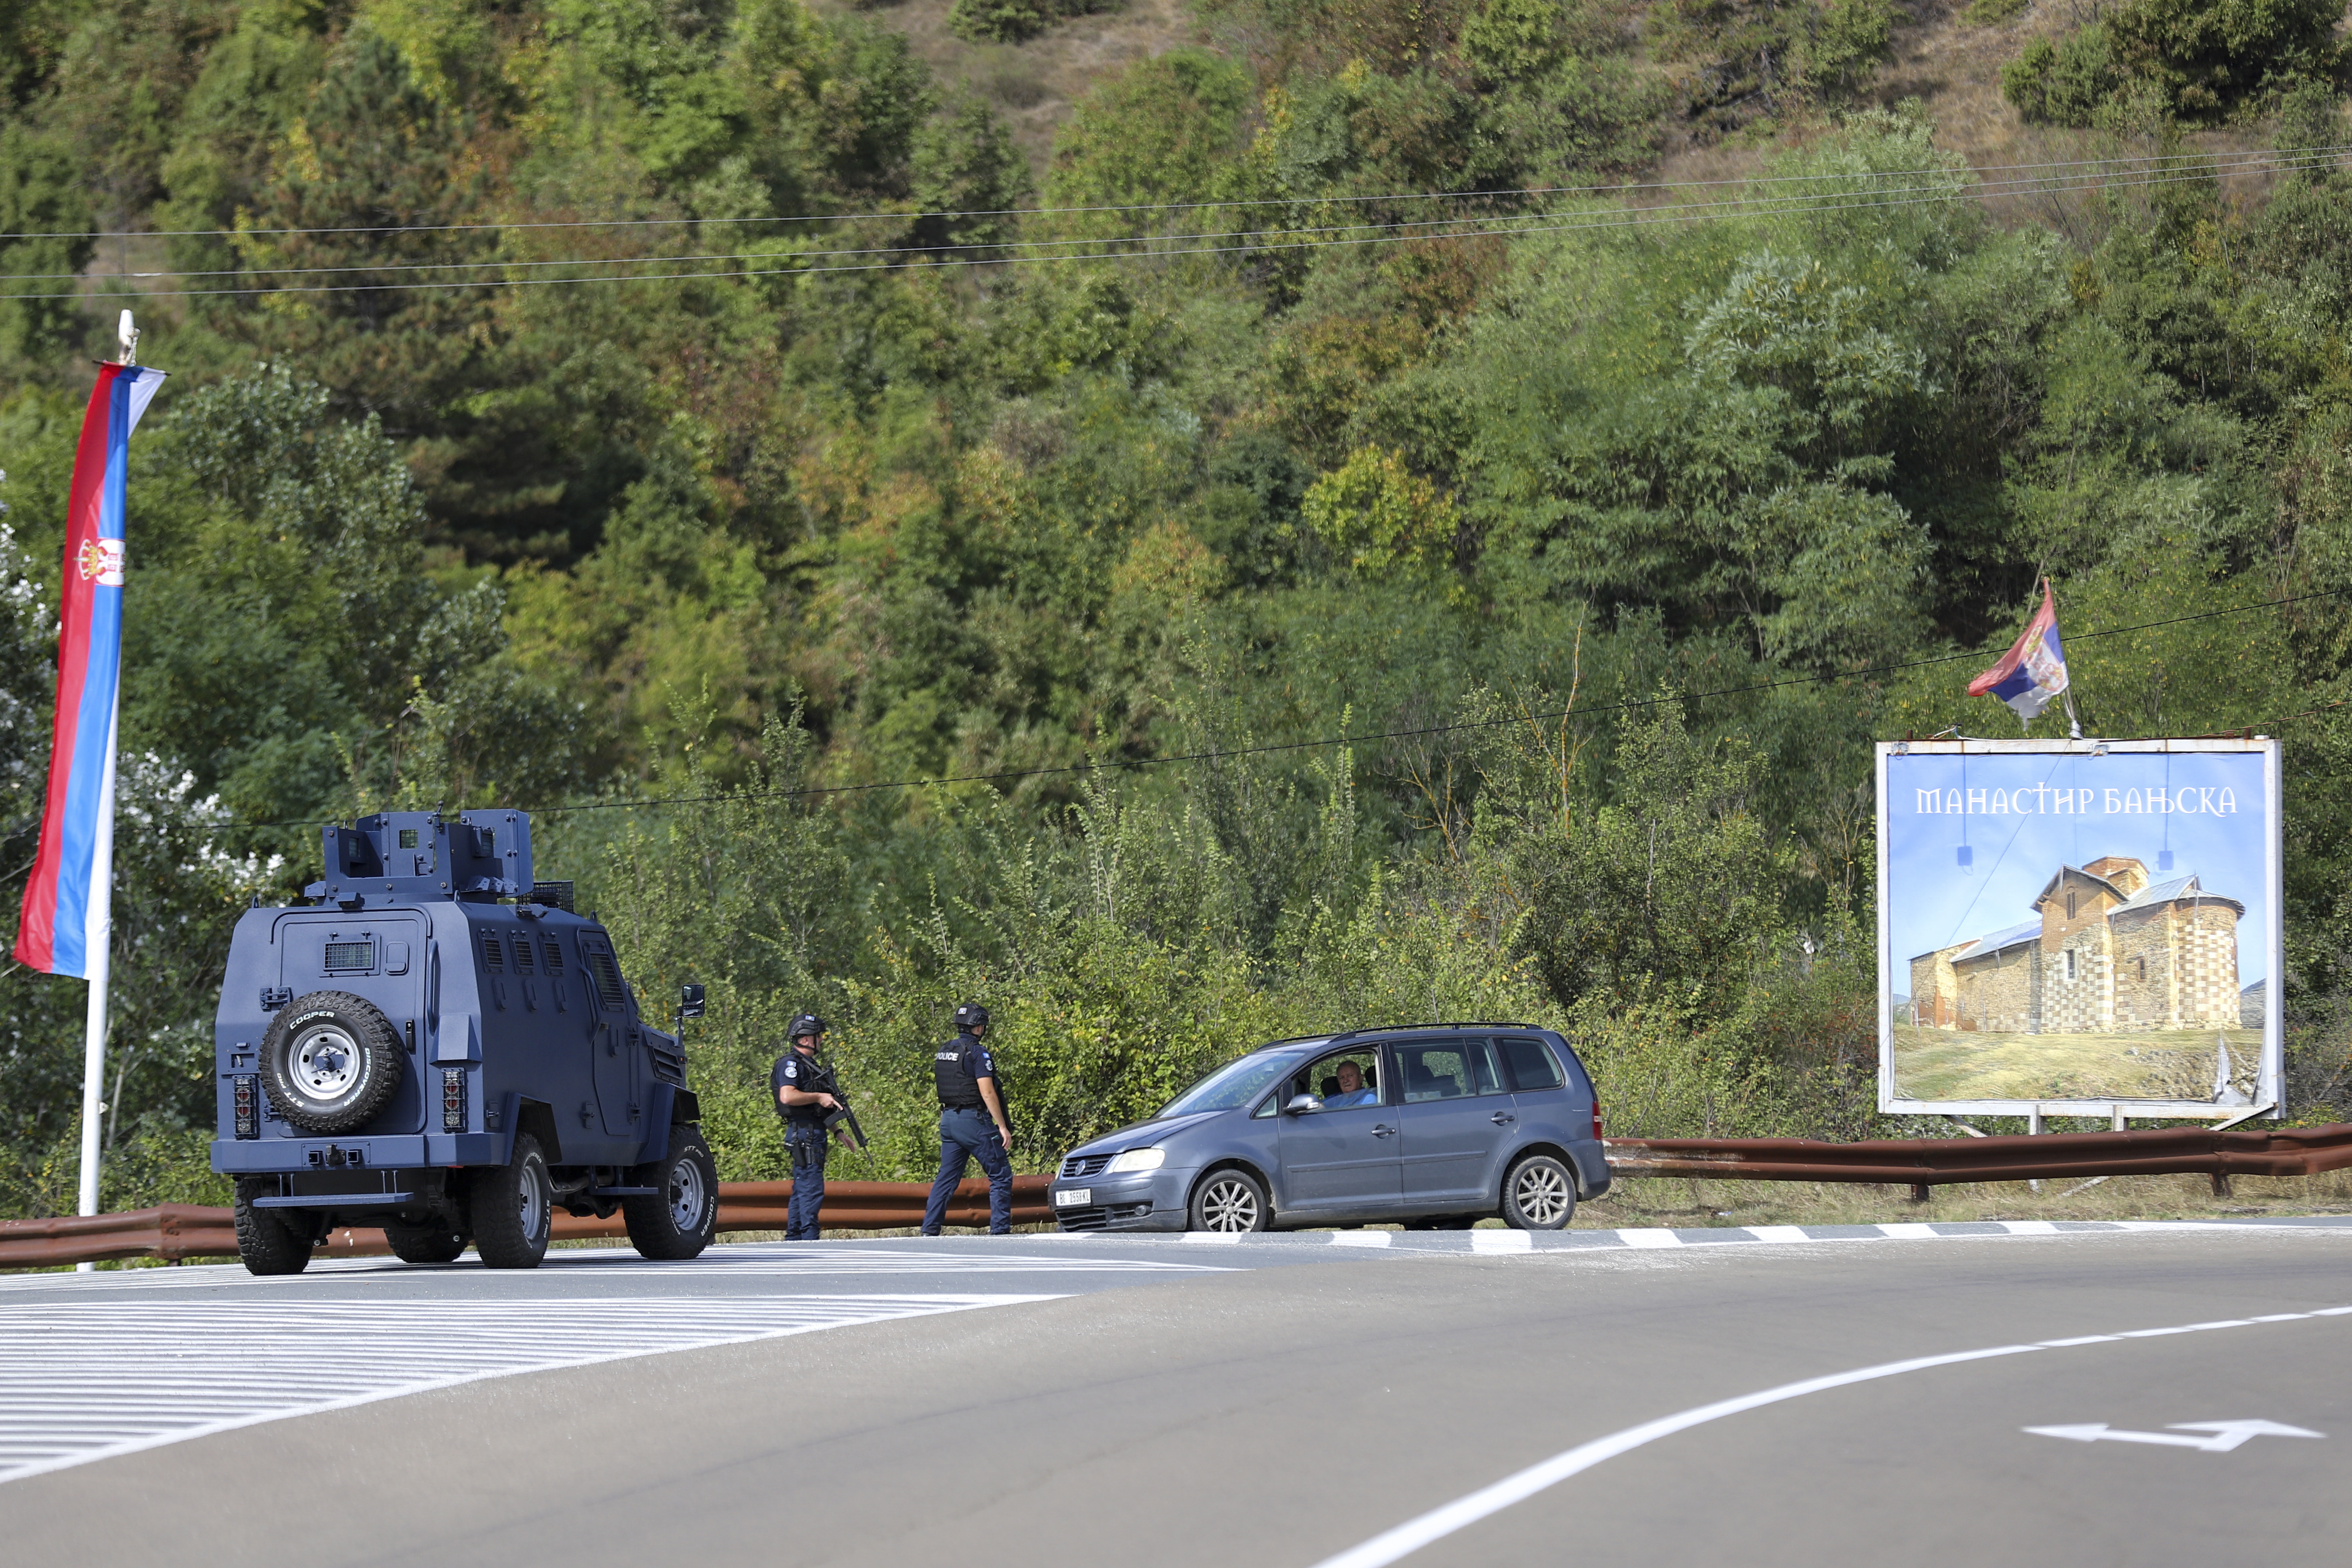 Percheziţii şi vehicule blindate într-un sat din nordul Kosovo